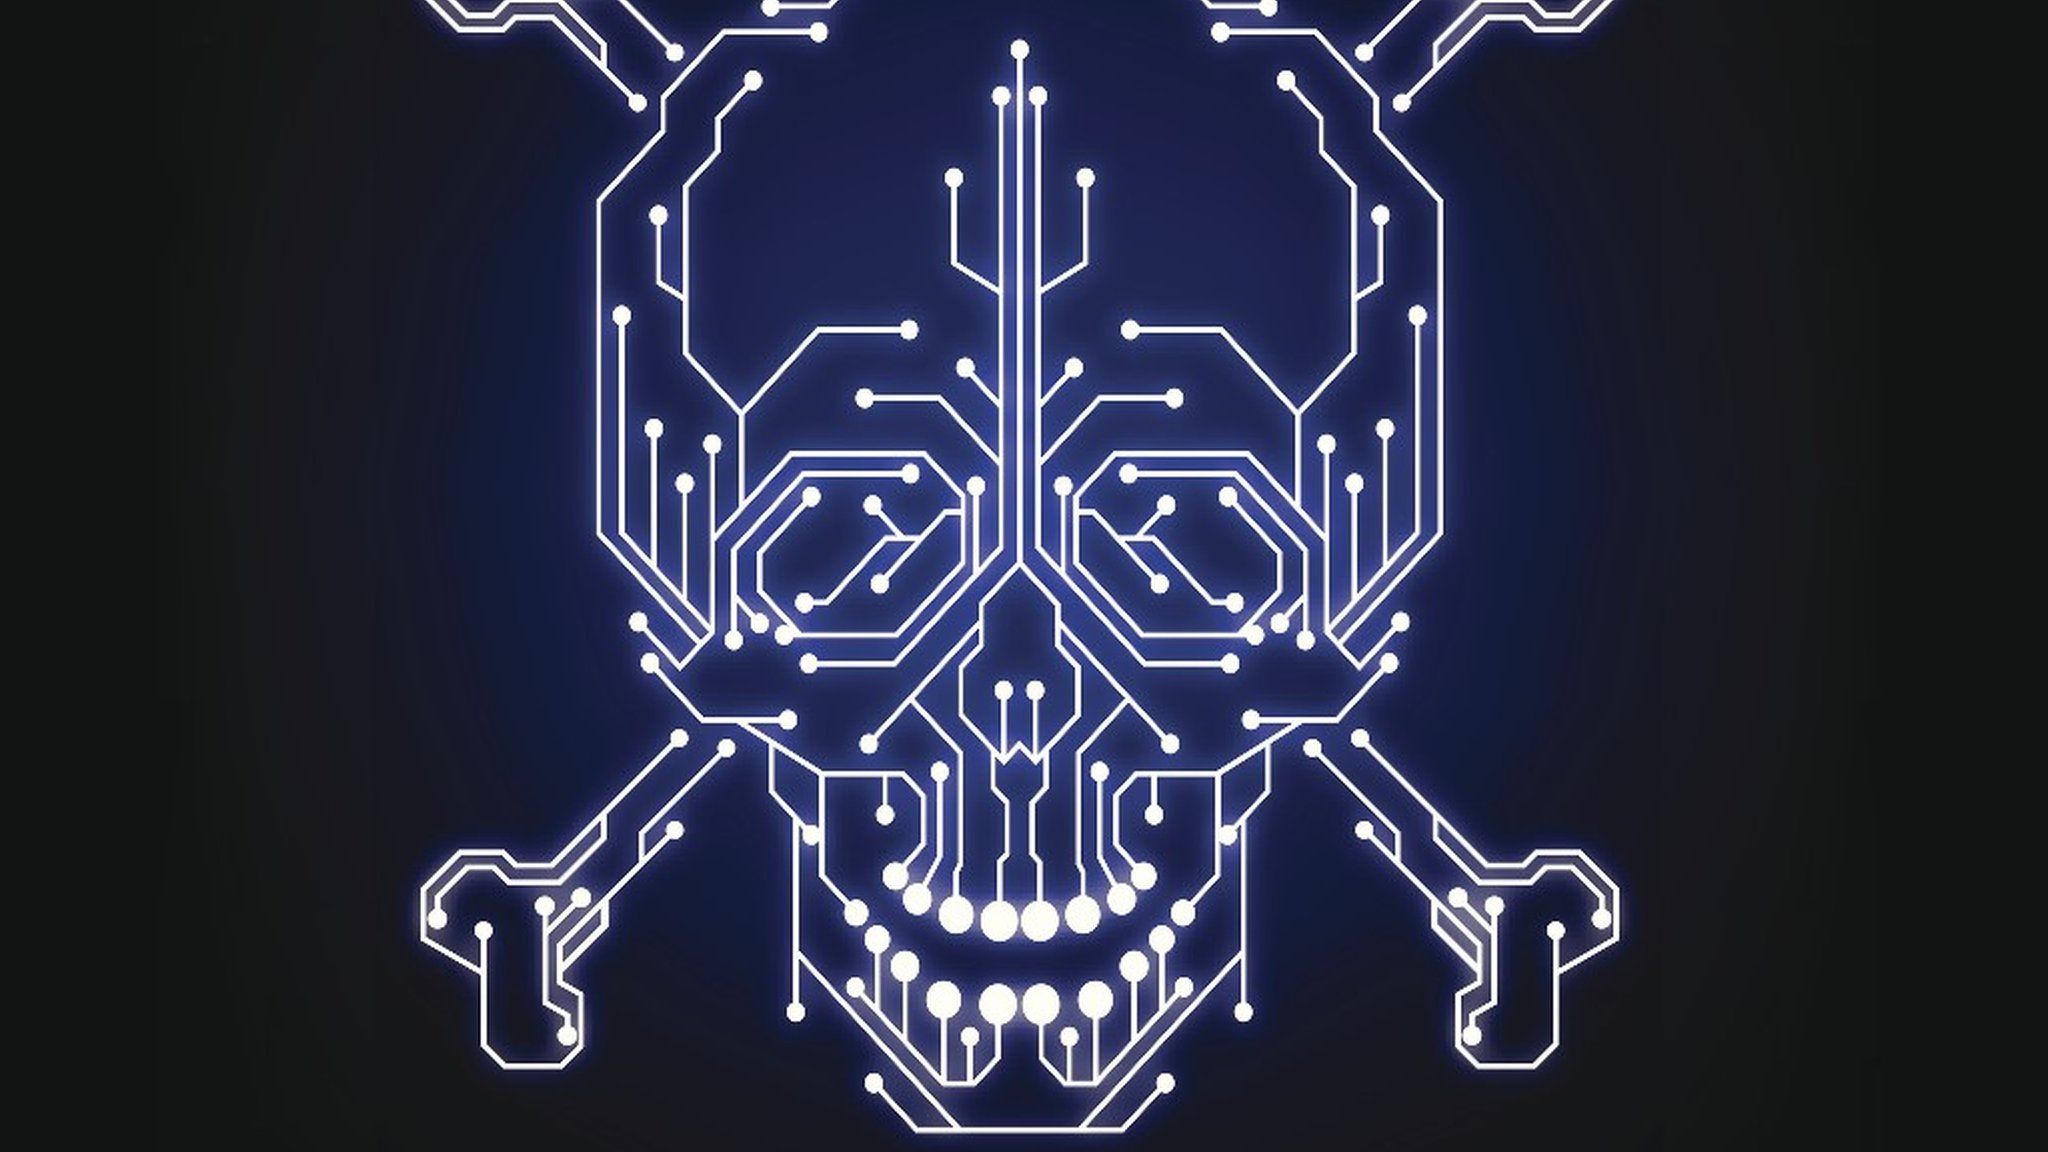 Cyber skull